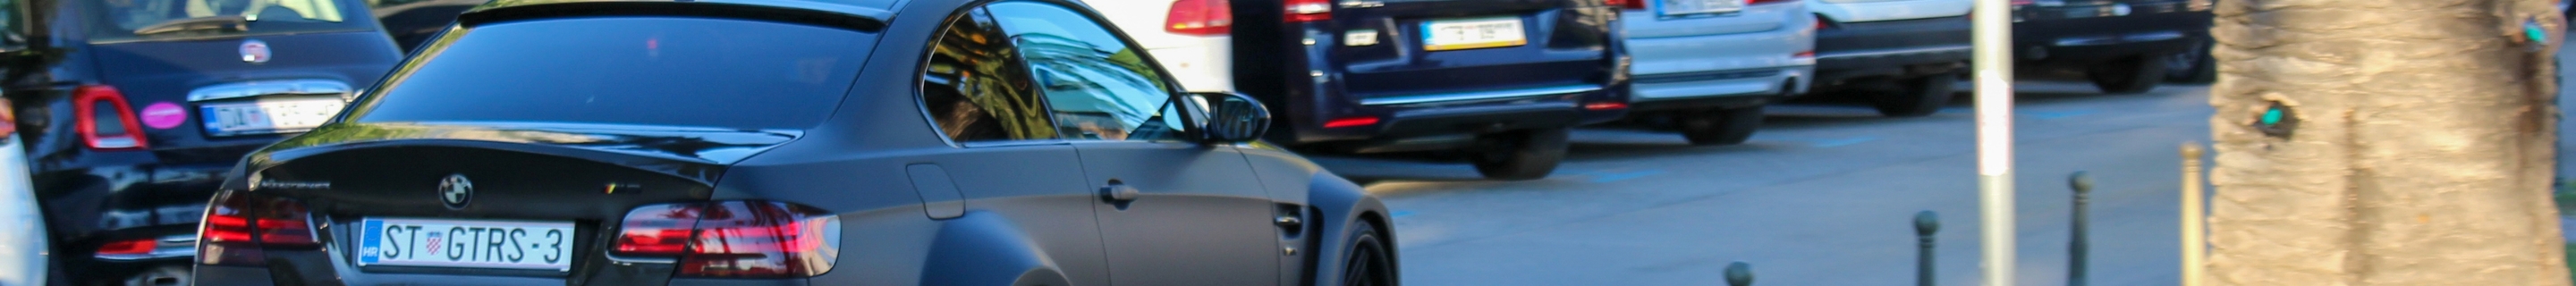 BMW M3 E92 Coupé Vorsteiner GTRS3 Widebody